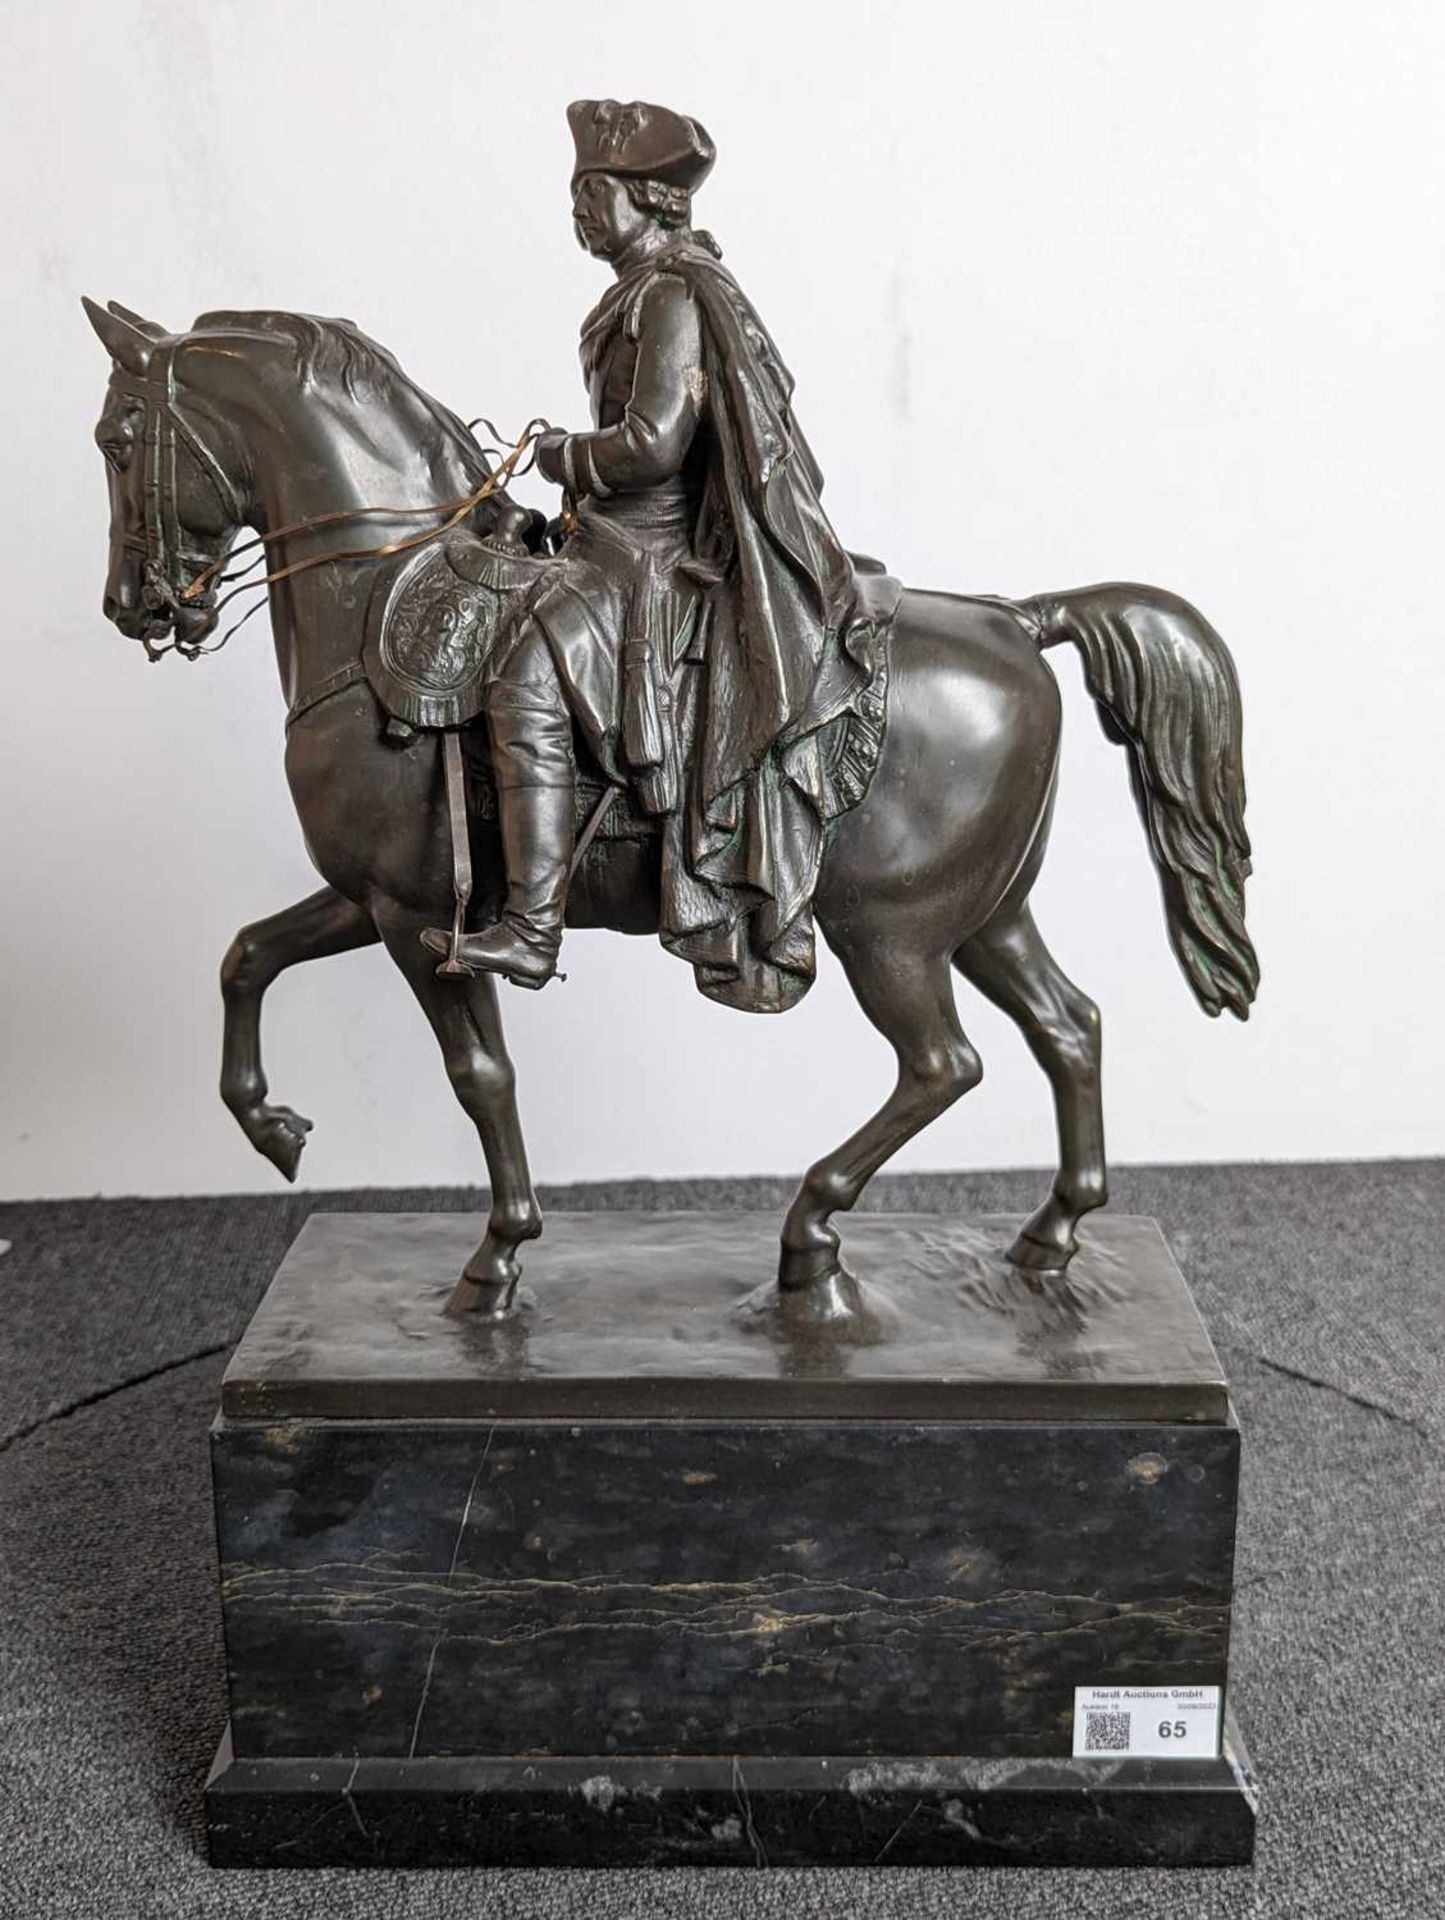 Skulptur von "Friedrich der Große" - Image 11 of 27